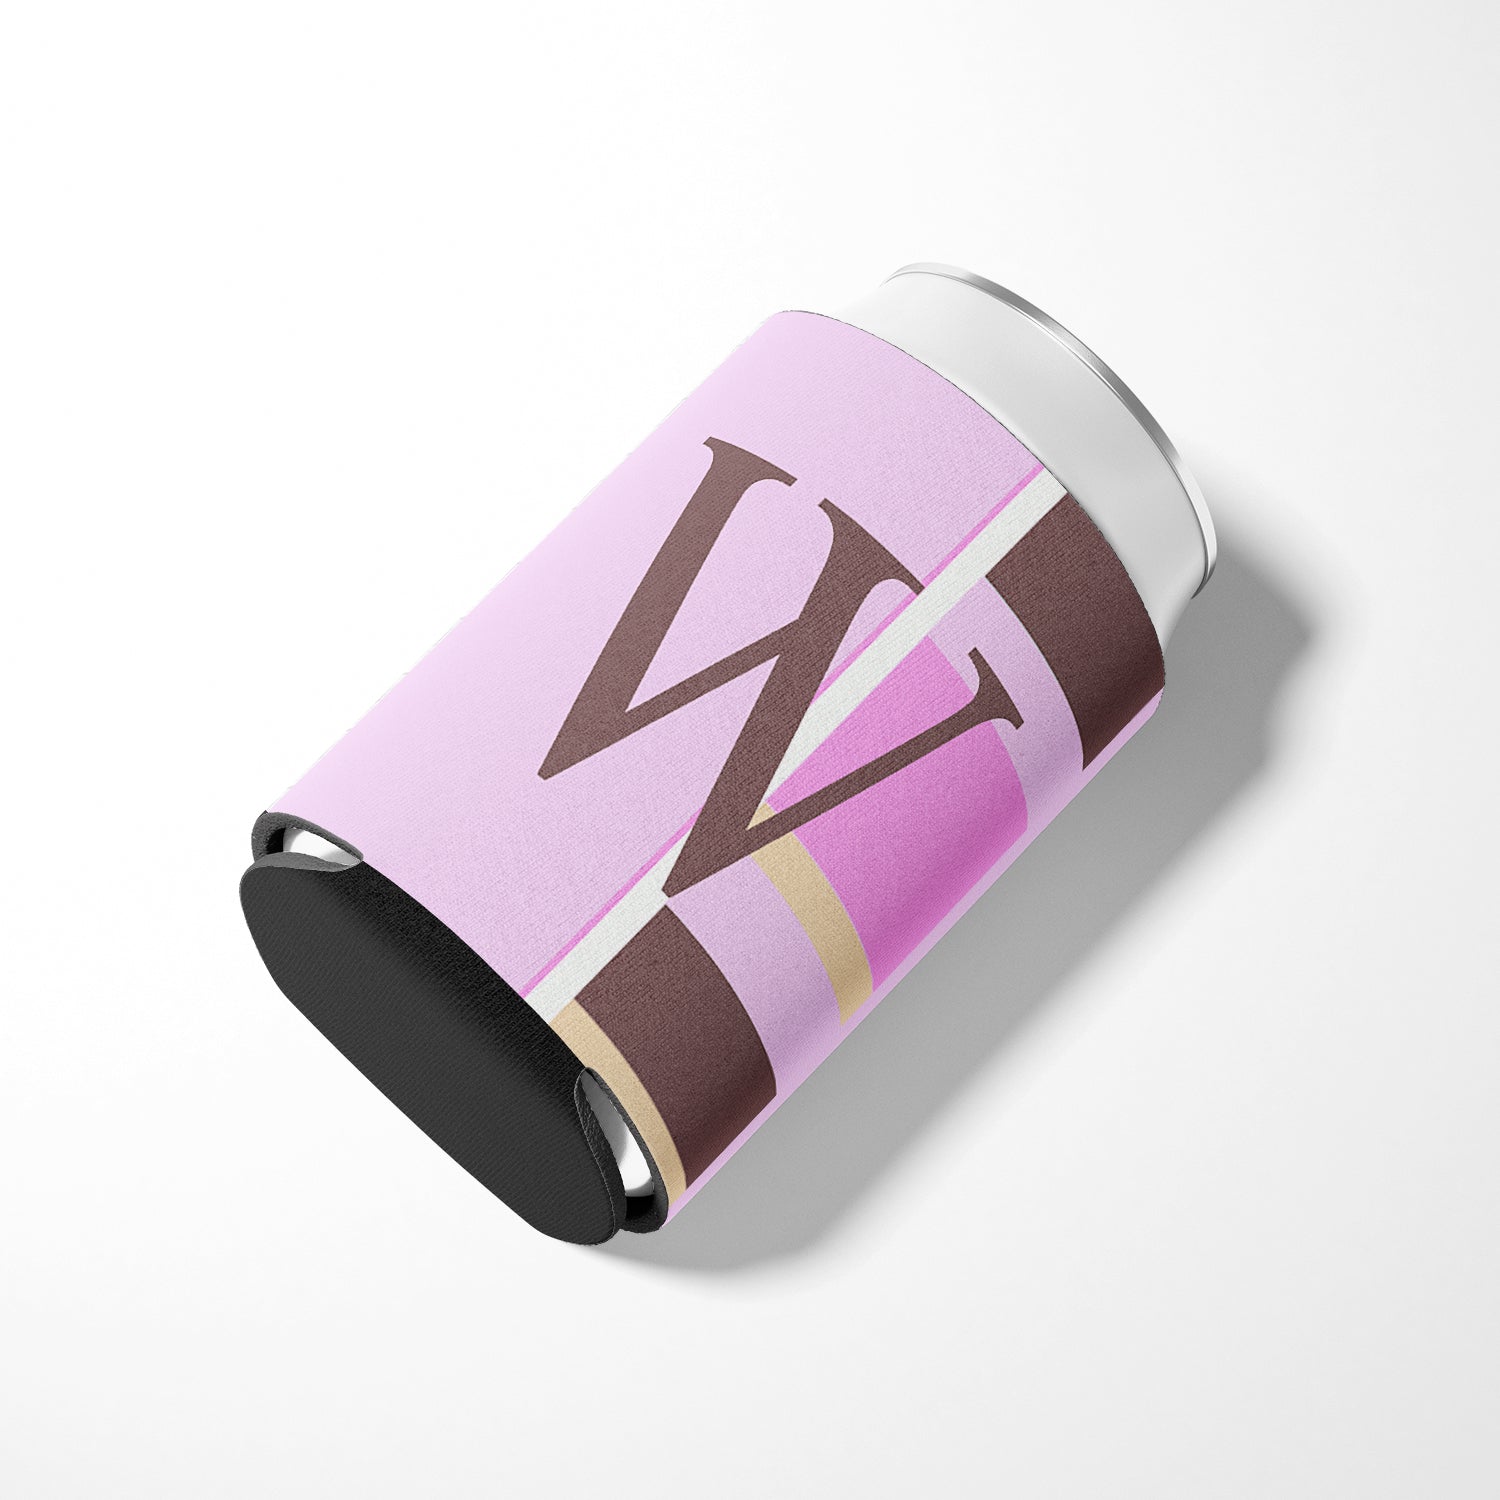 Letter W Initial Monogram - Pink Stripes Can or Bottle Beverage Insulator Hugger